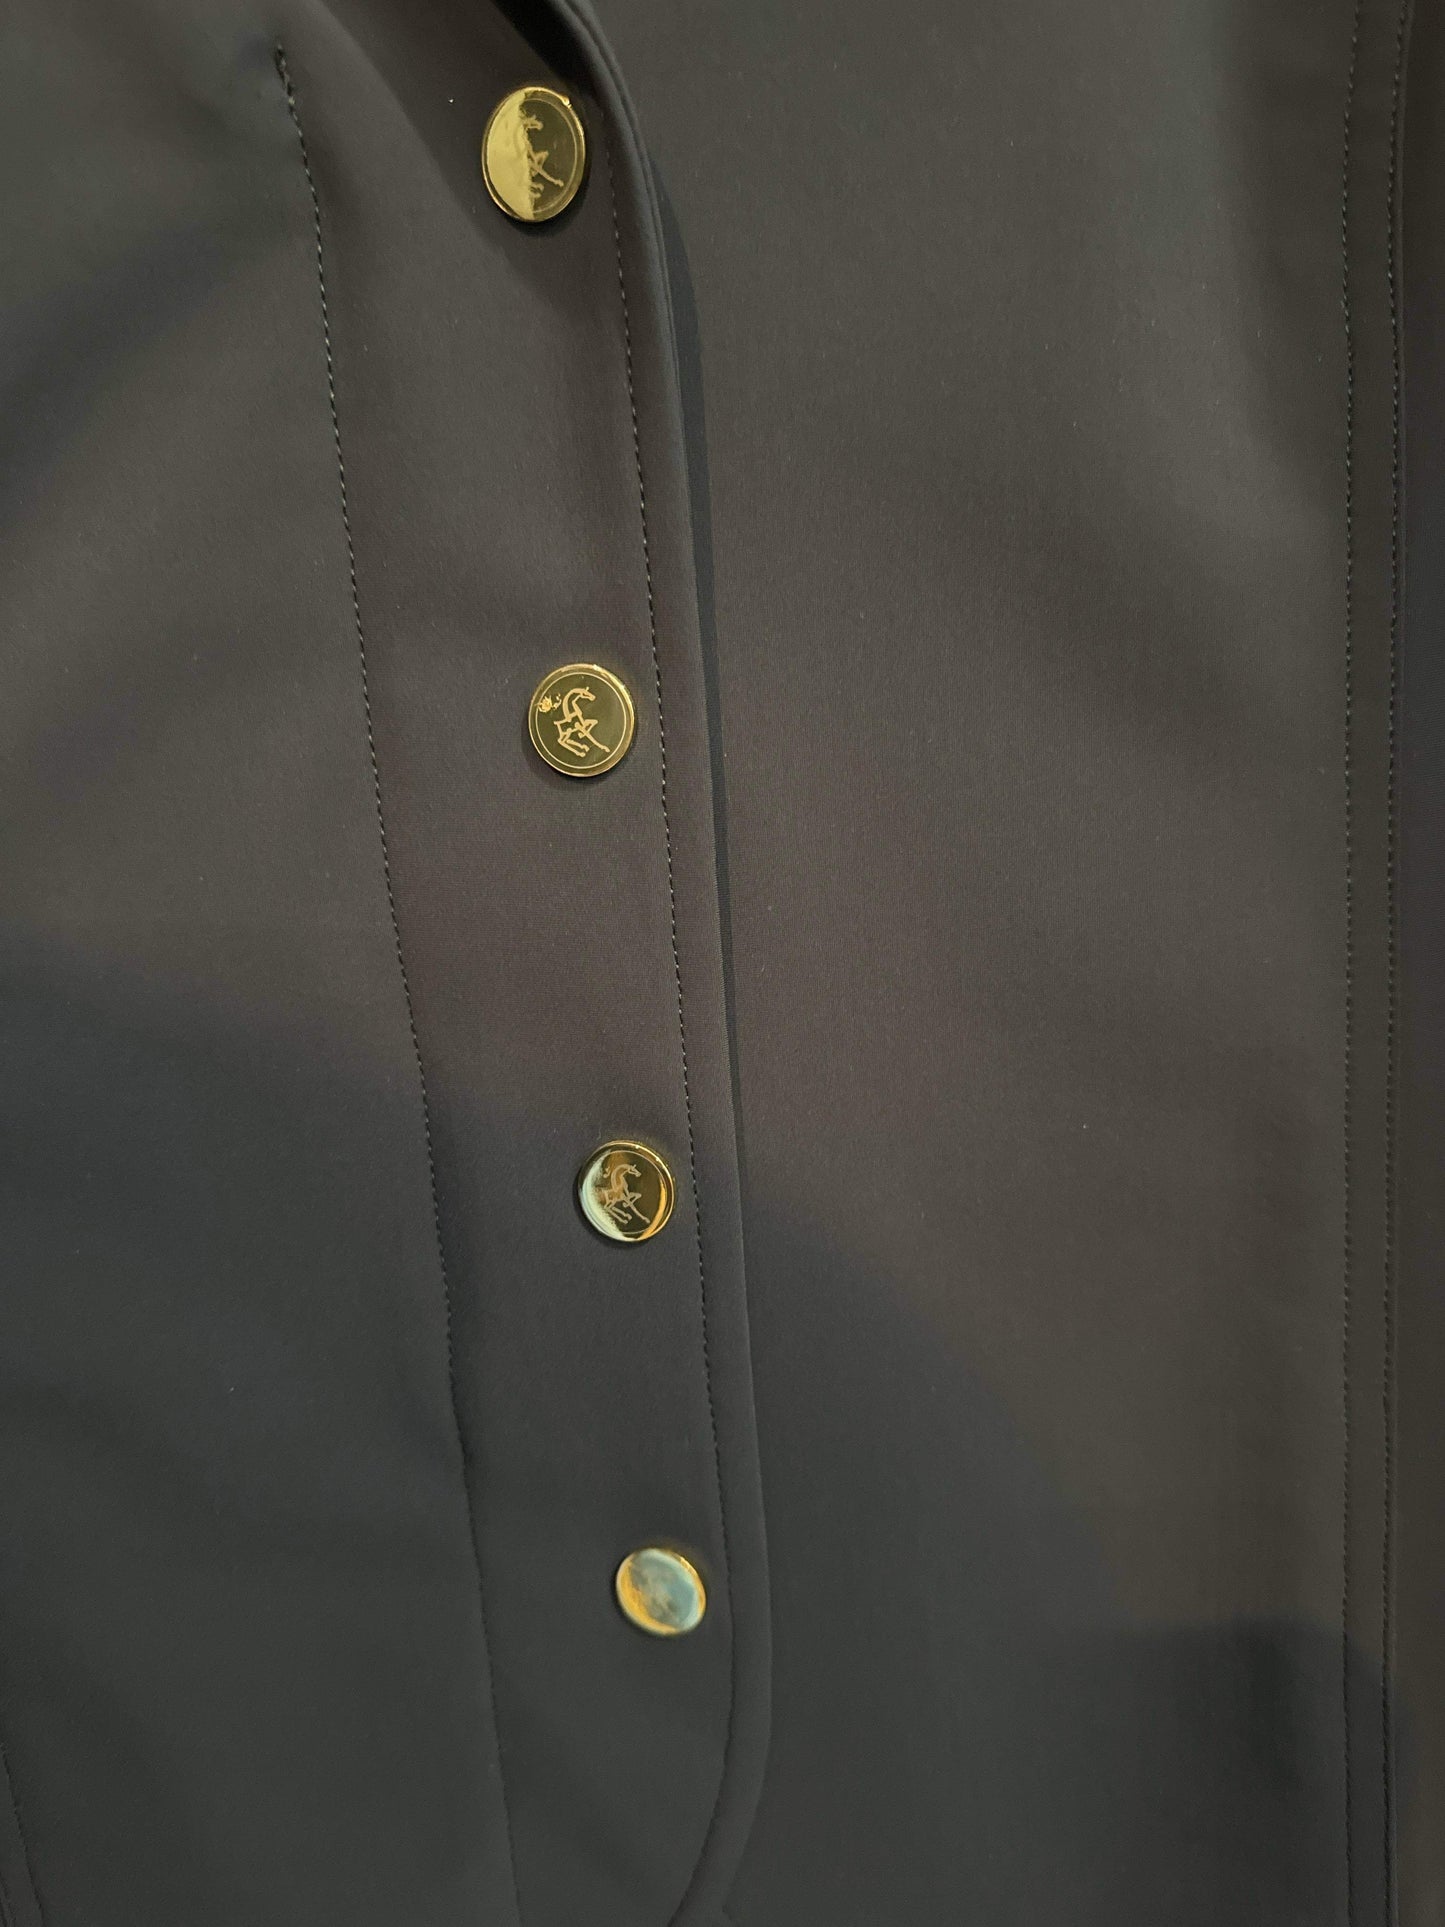 A Tiss B Quickstar Size XS Air Vest Compatible Show Coat